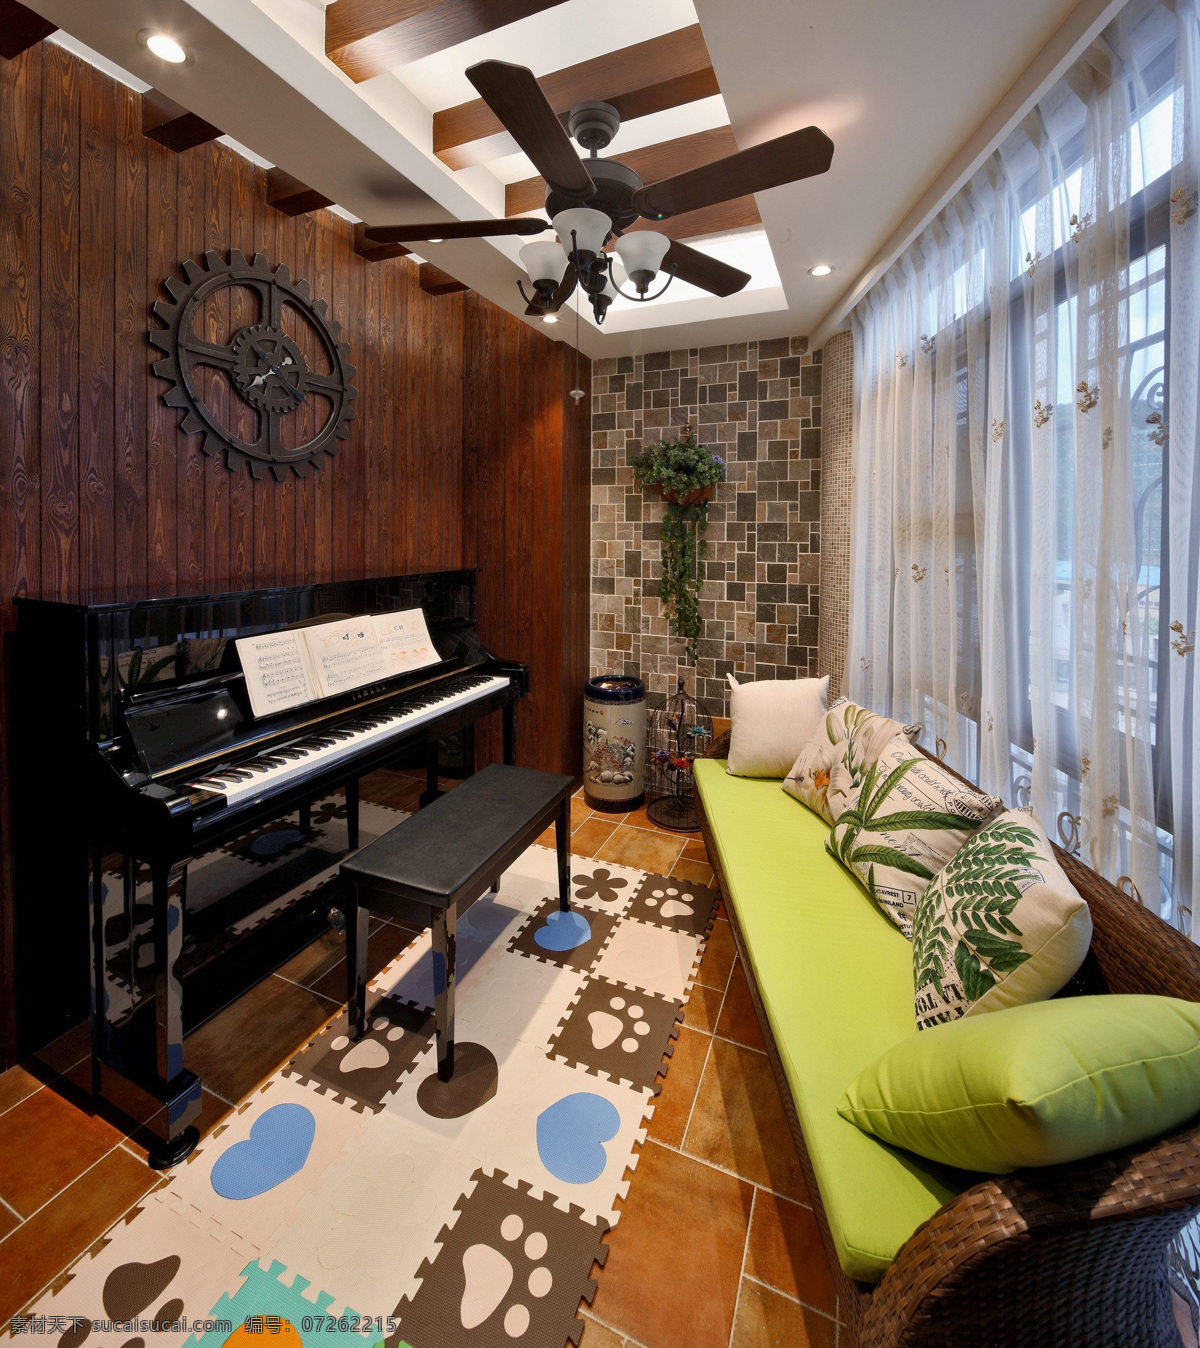 美式 时尚 钢琴 室 设计图 家居 家居生活 室内设计 装修 室内 家具 装修设计 环境设计 钢琴室